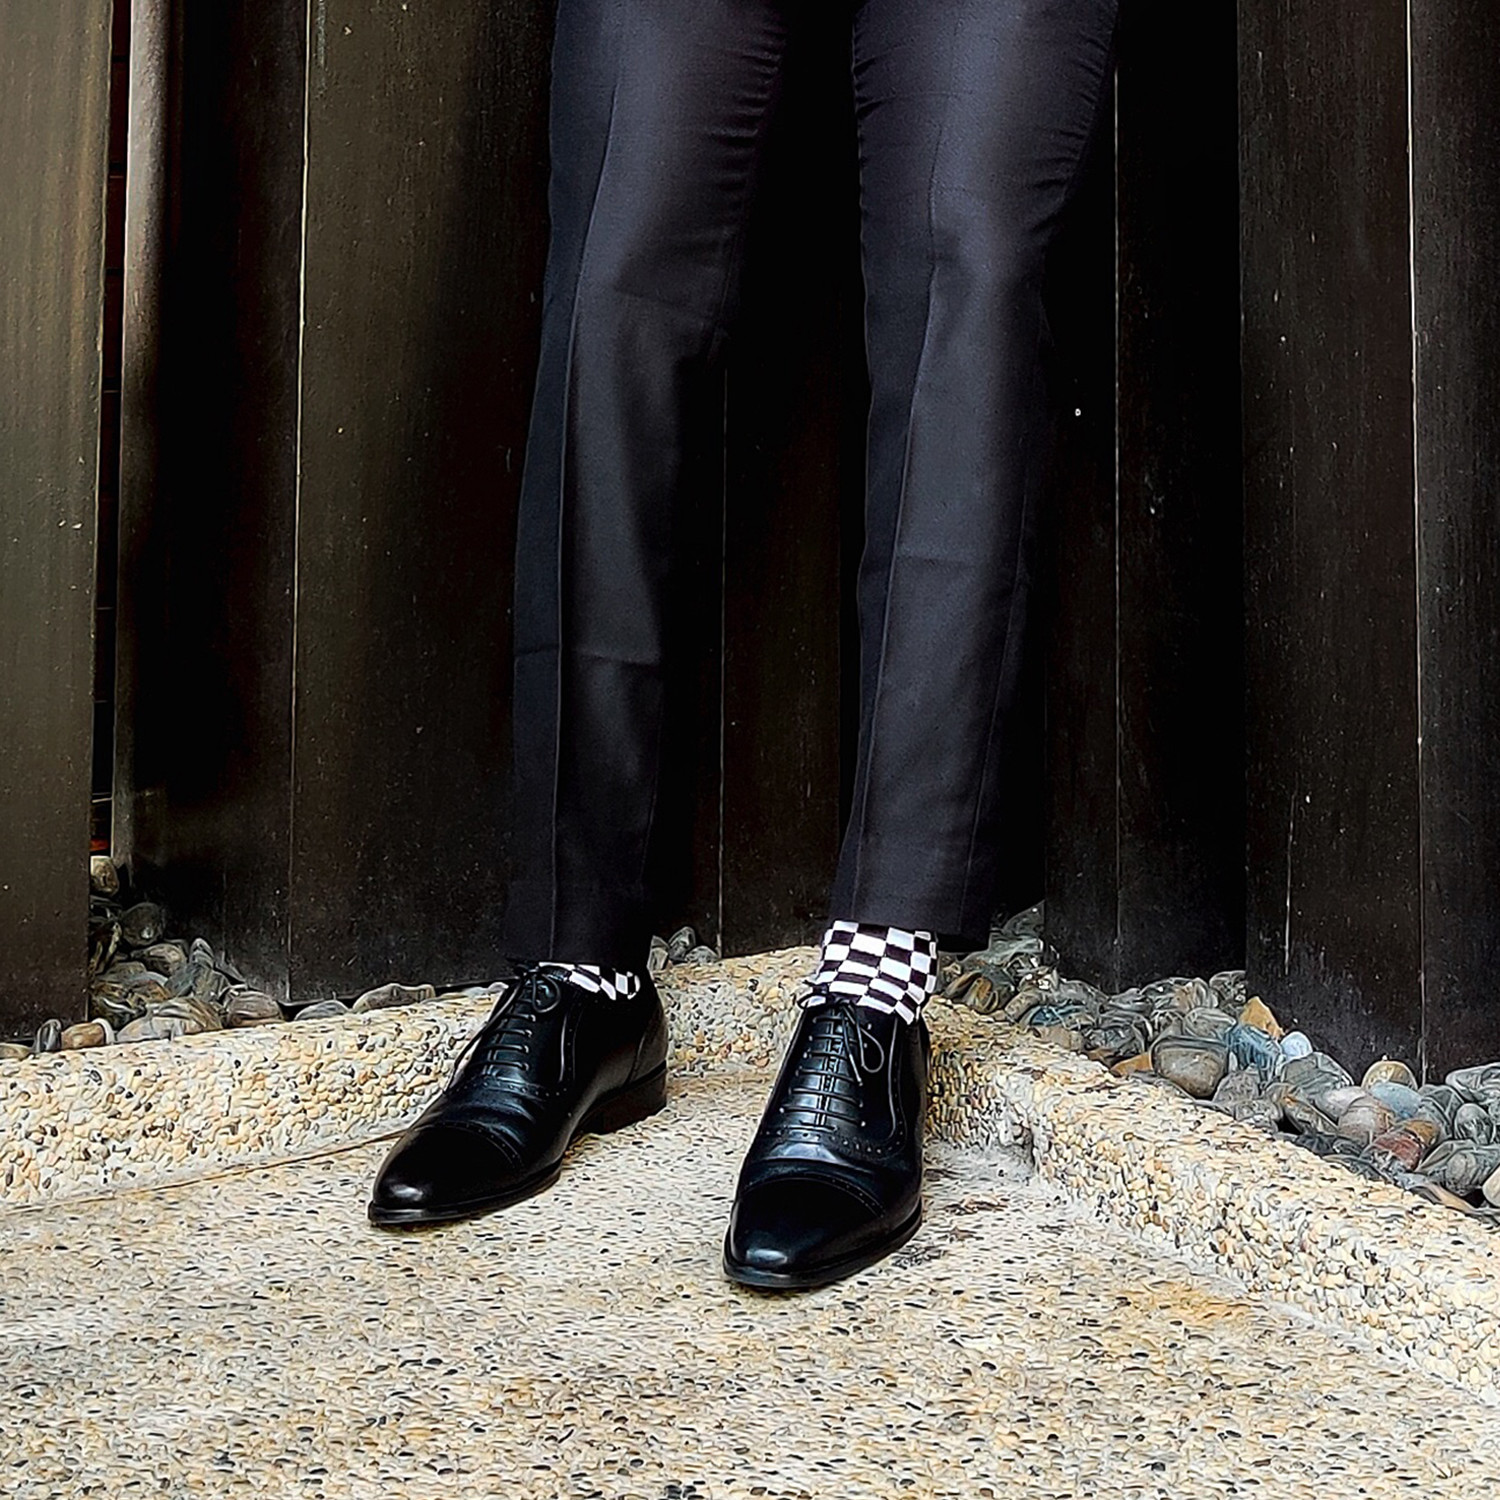  GALLERY SEVEN Dapper Mens Dress Shoes - Oxford Shoes Men -  Black Semi-Brogues - 10.5 D(M) US